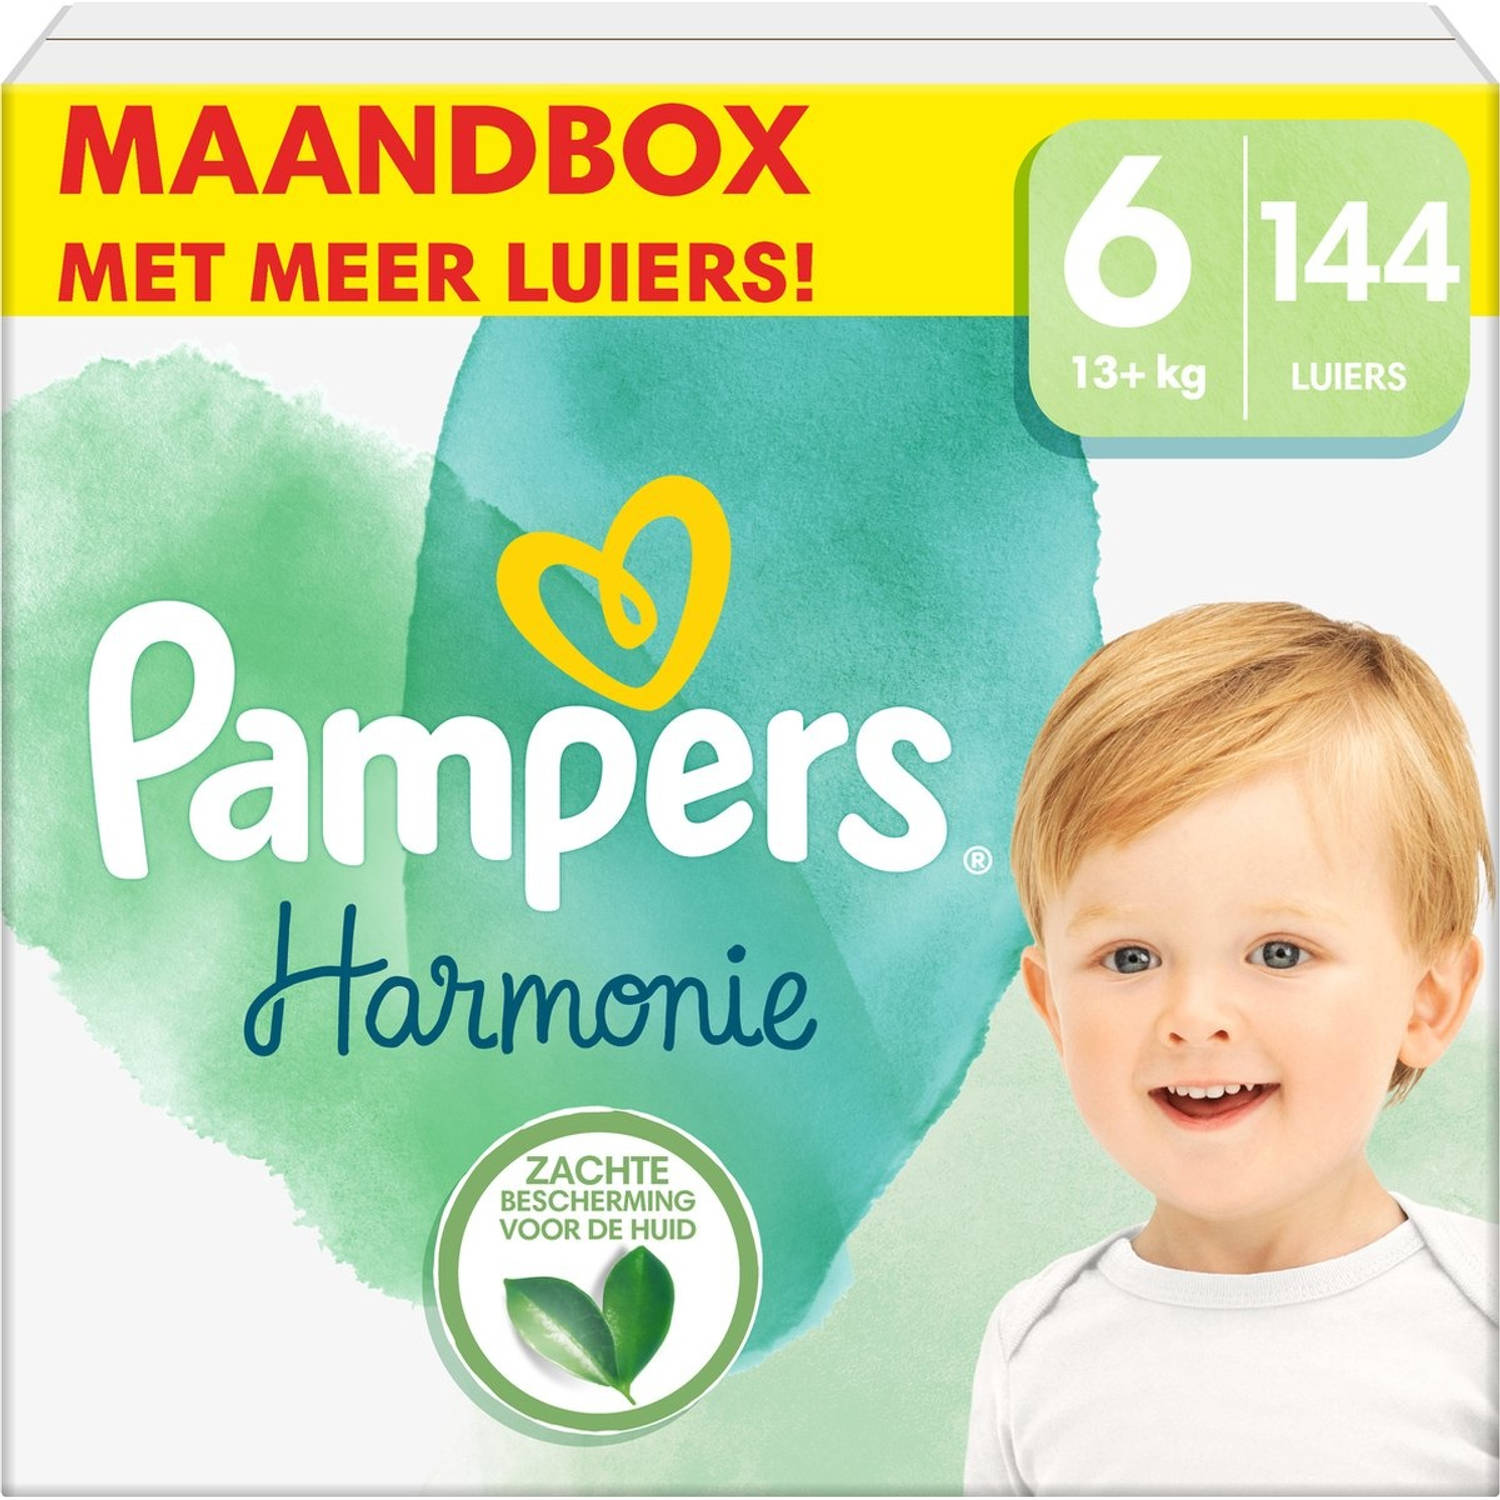 Pampers Harmonie Luiers - Maat 6 (13kg+) - 144 Luiers - Maandbox